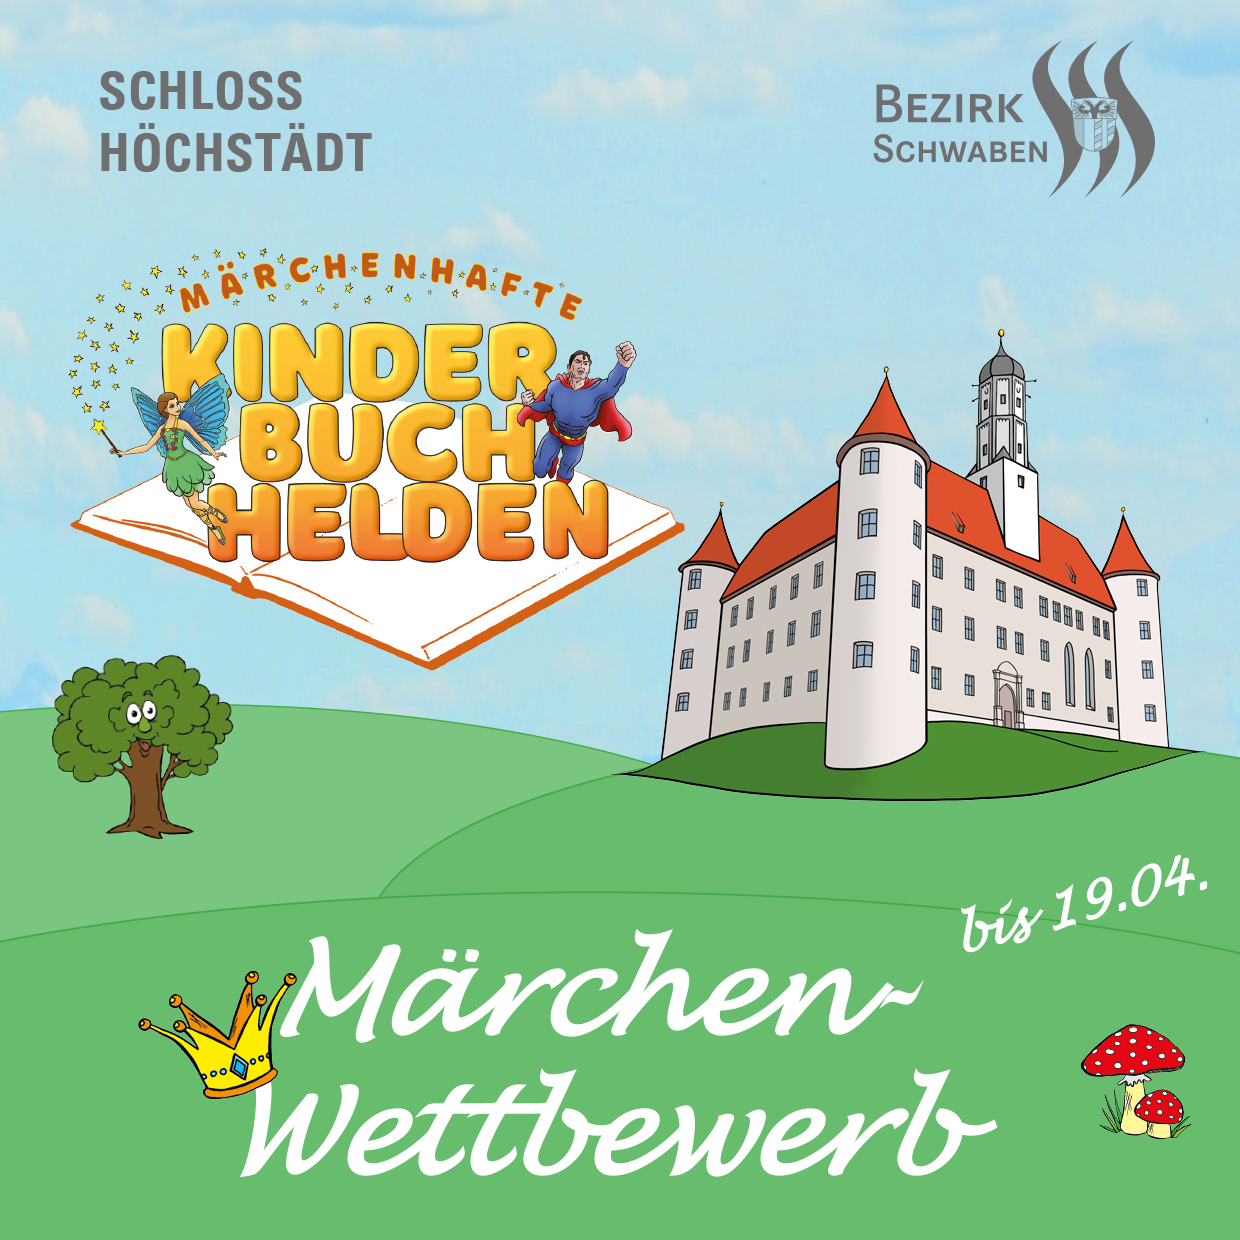 Märchenwettbewerb statt Ausstellungsbesuch: Ferienangebot des Bezirks Schwaben